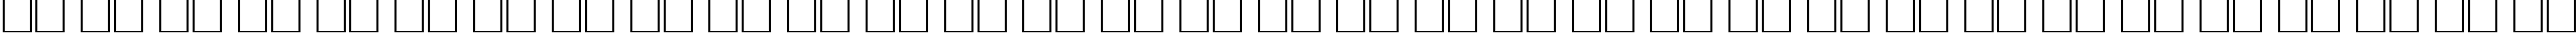 Пример написания русского алфавита шрифтом Bodoni Roman Italic